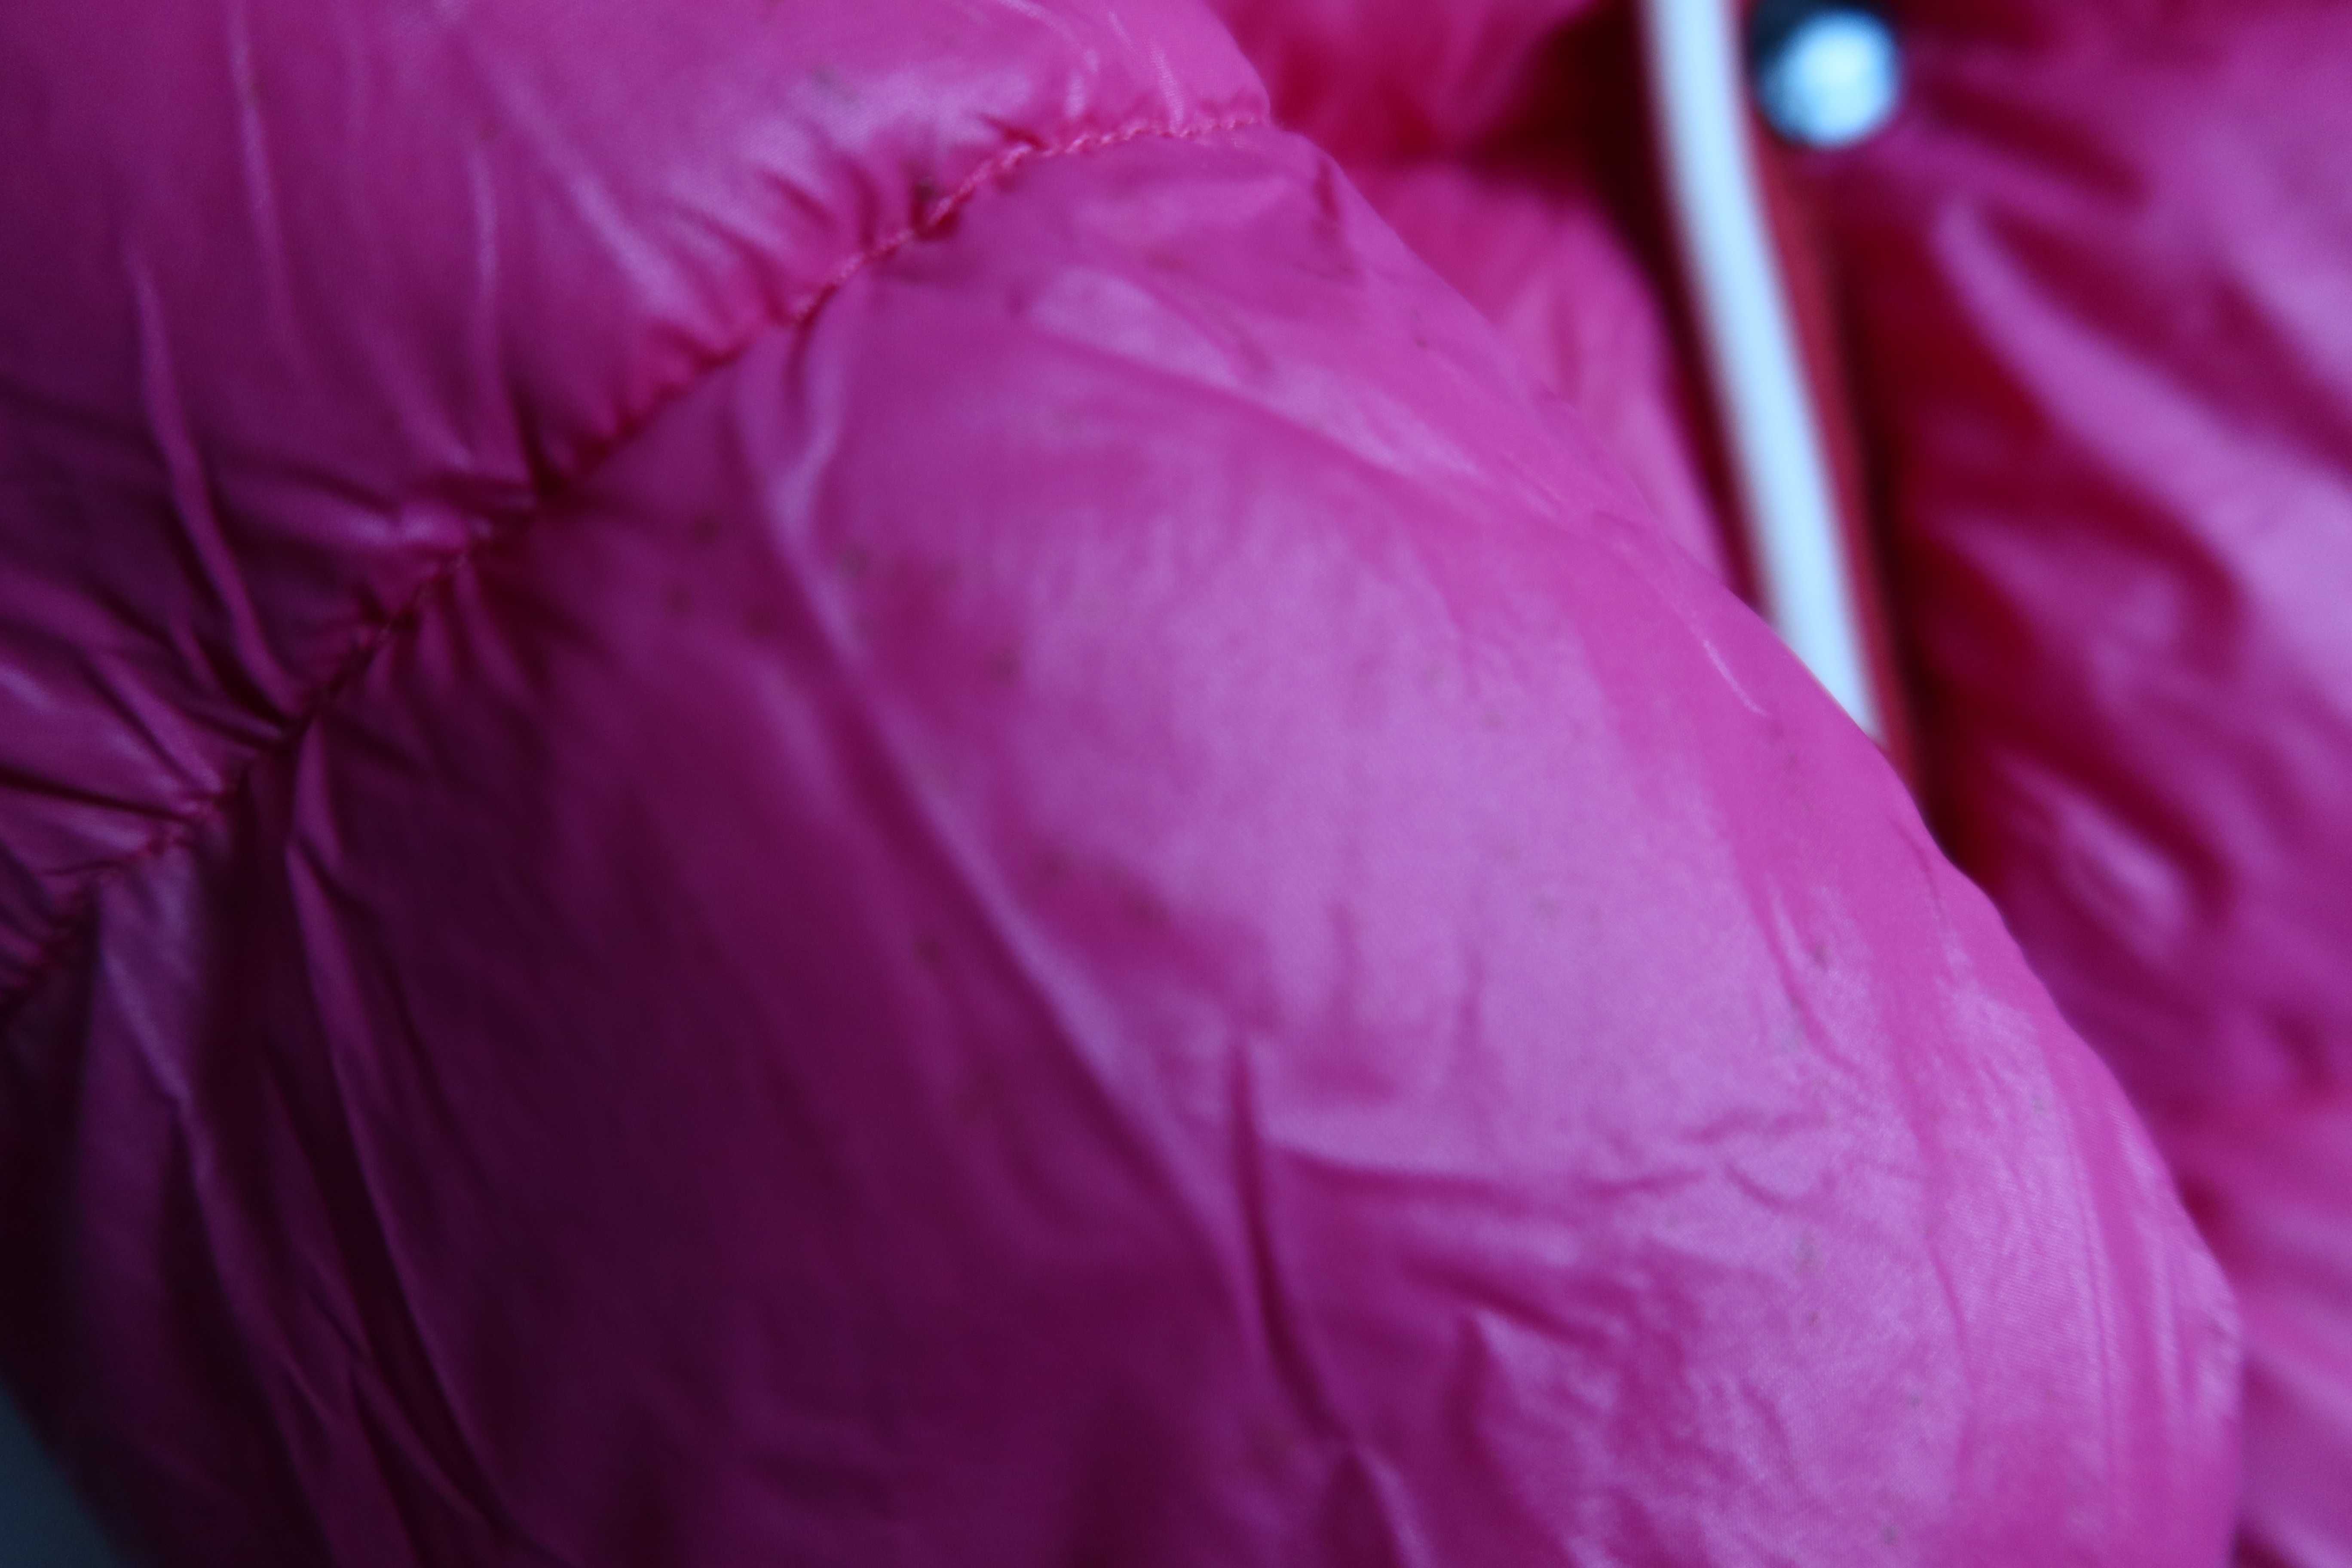 Kurtka puchowa MONCLER 110 fuksja różowa kurtka dla dziewczynki puch